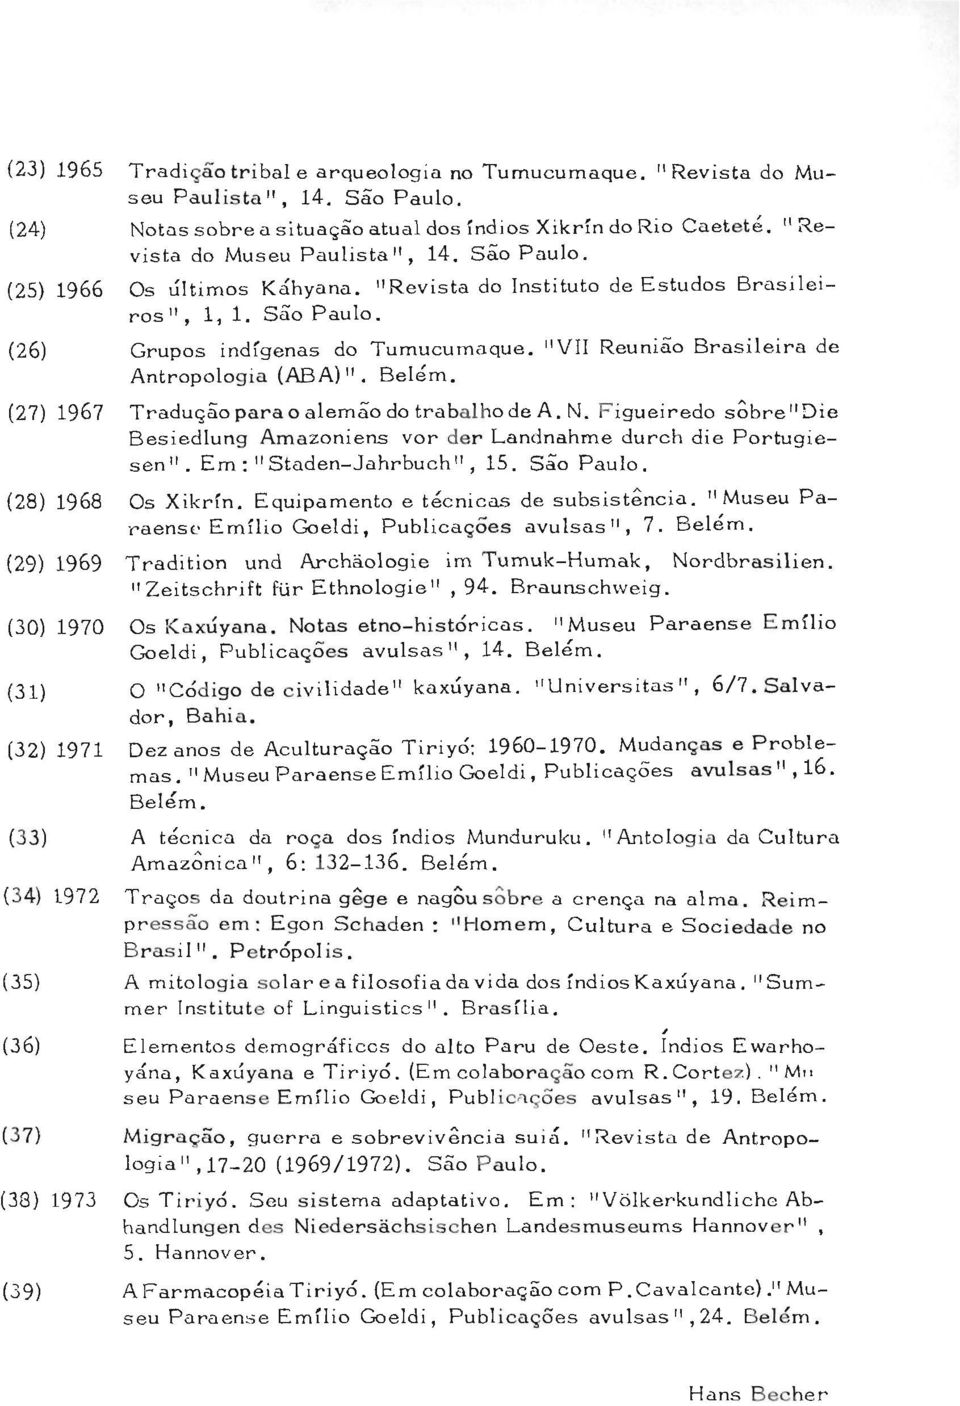 (27) 1967 Traduqäoparao alemäo do trabalhode A. N. Figueiredo sobre"die Besiedlung Amazoniens vor der Landnahme durch die Portugiesen". Em: "Staden-Jahrbuch", 15. Säo Paulo. (28) 1968 Os Xikrfn.